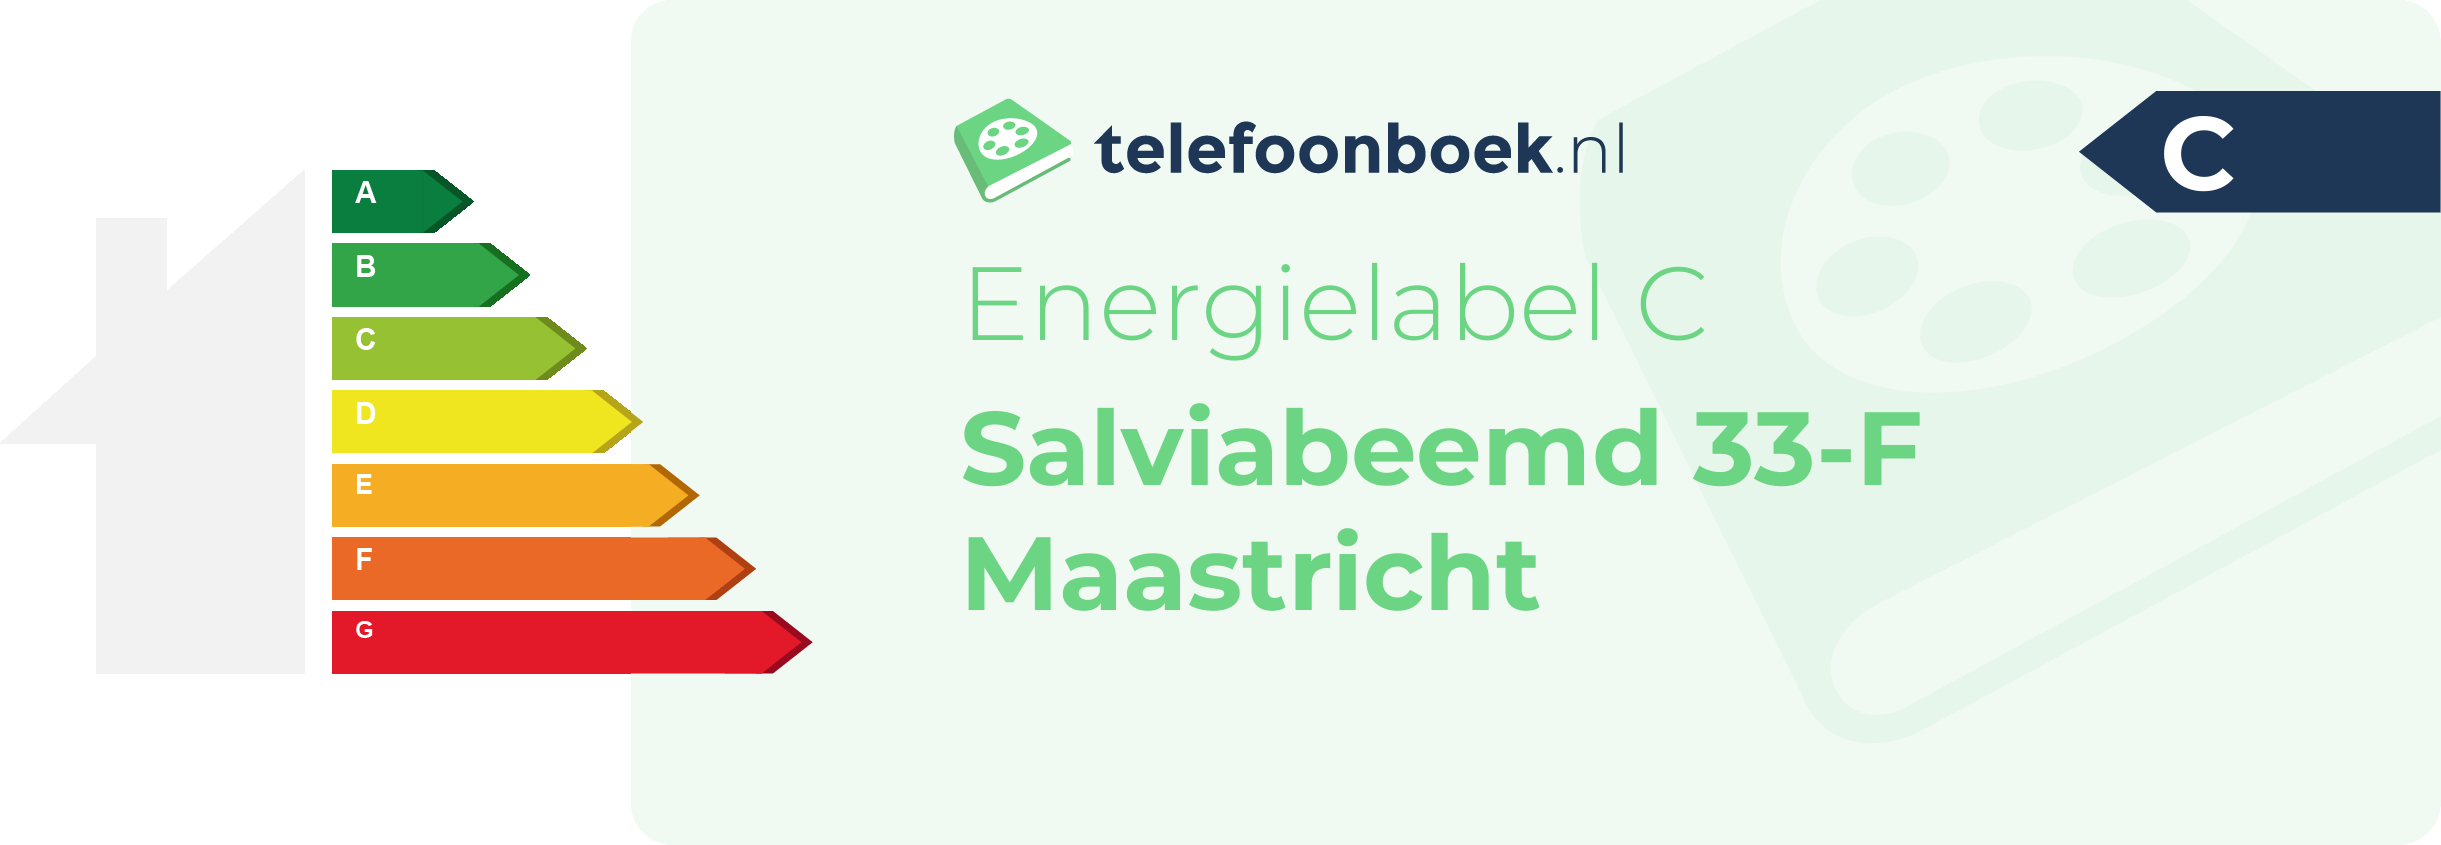 Energielabel Salviabeemd 33-F Maastricht